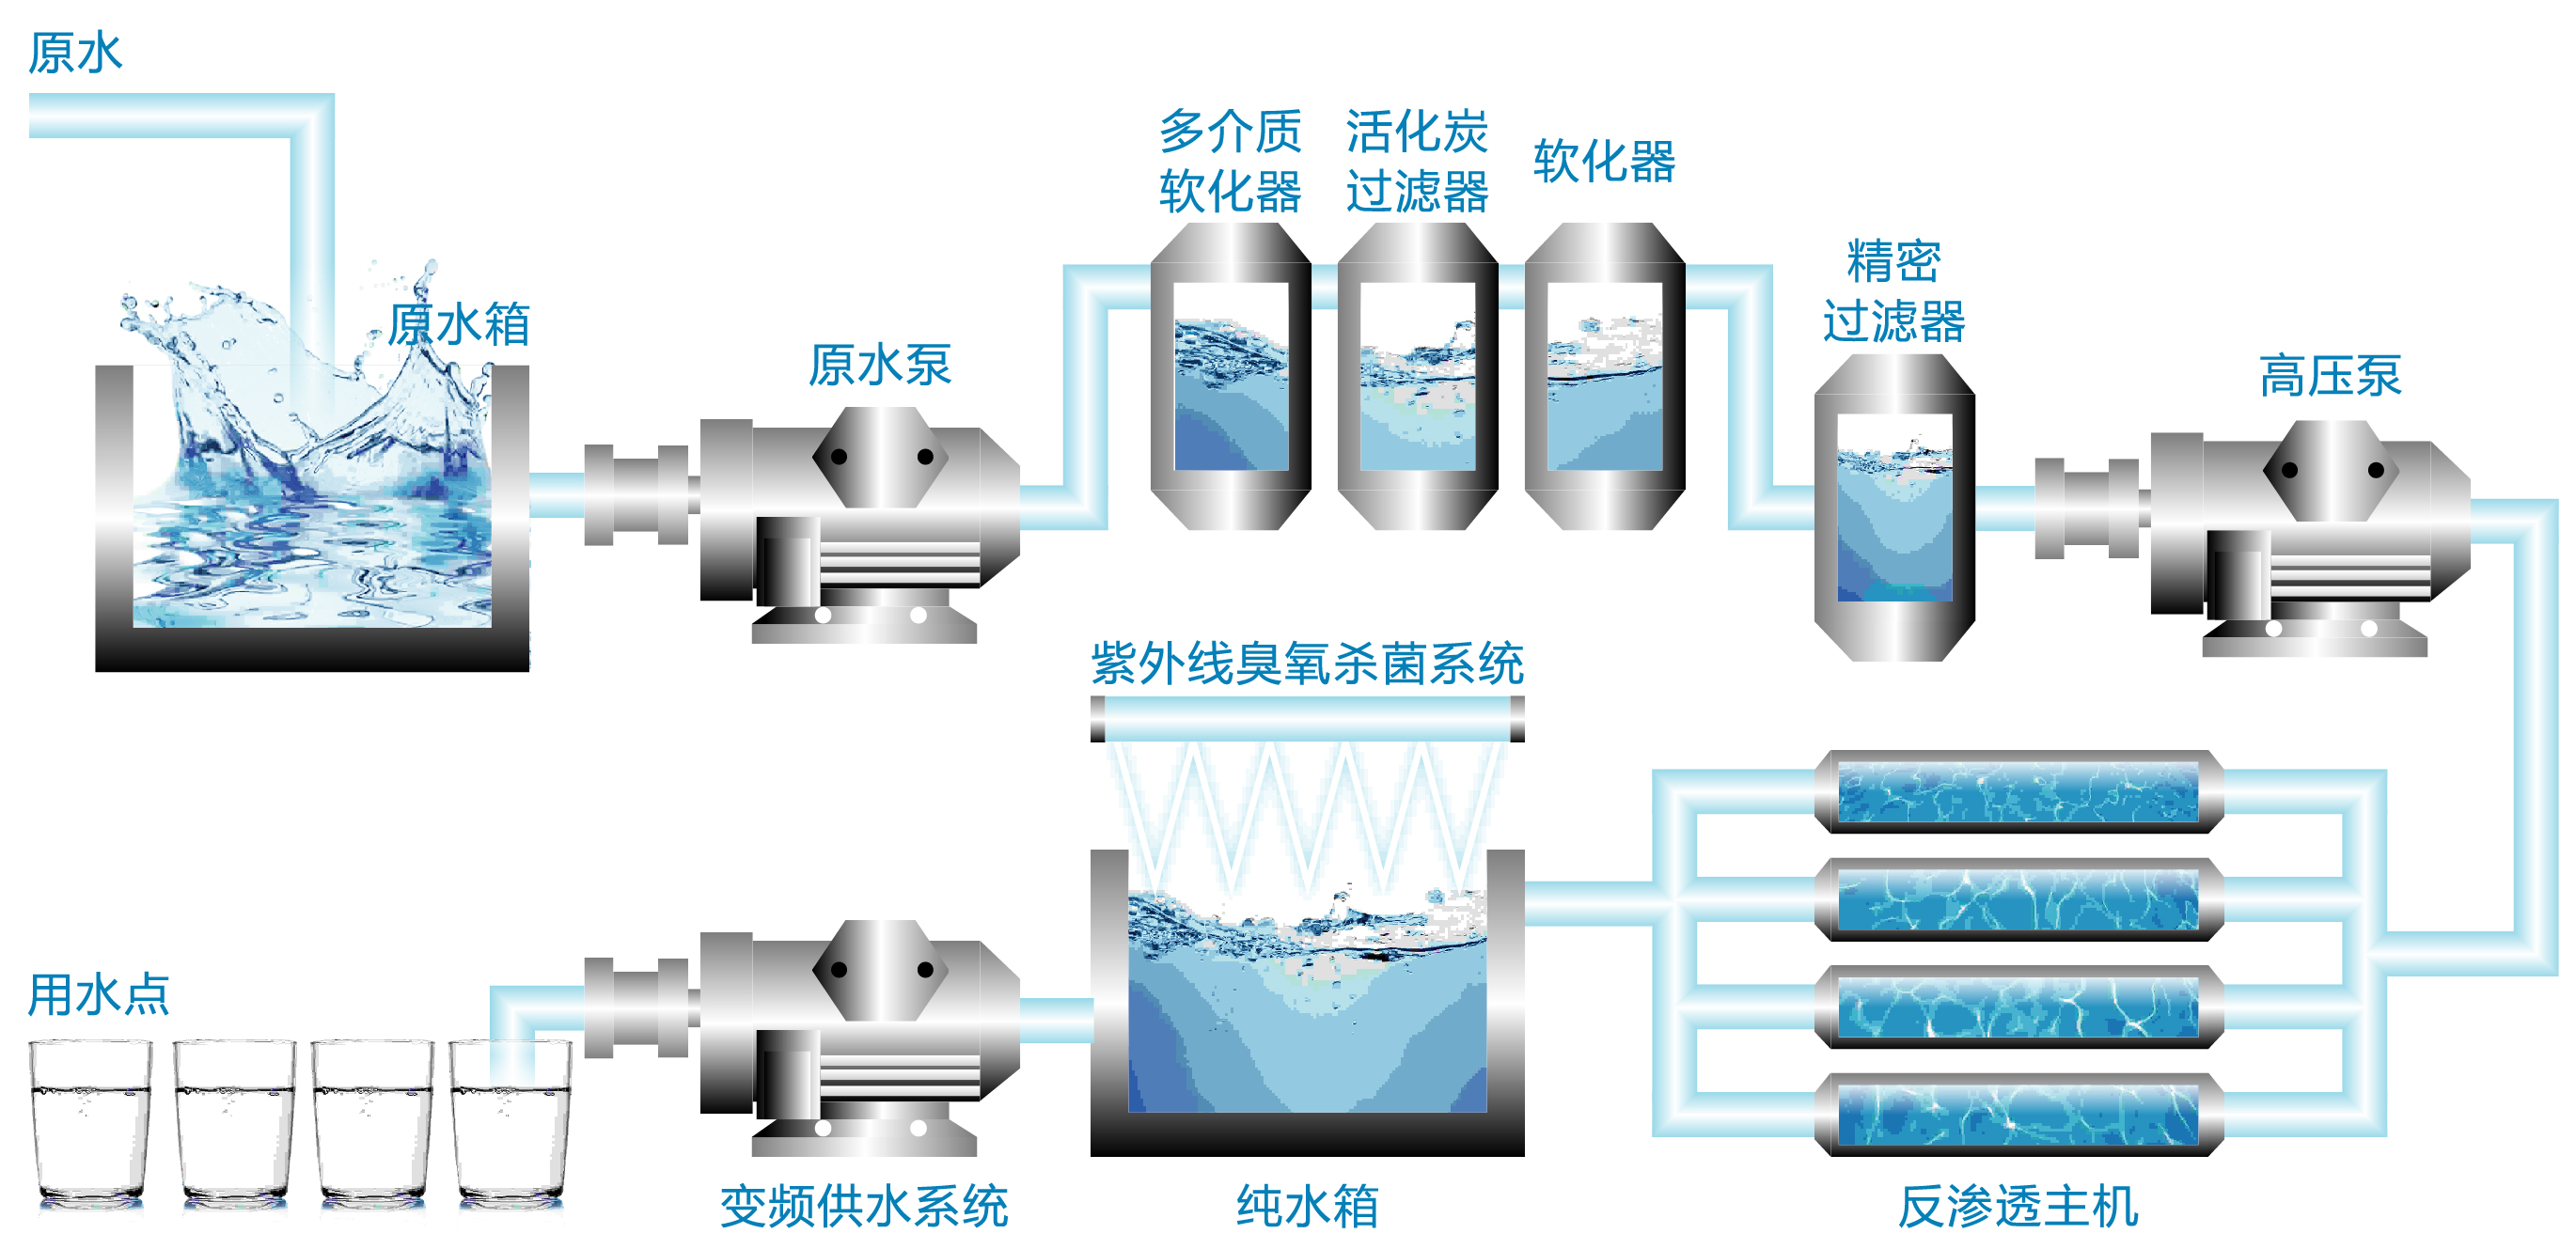 纯净水工艺设备原理流程.jpg